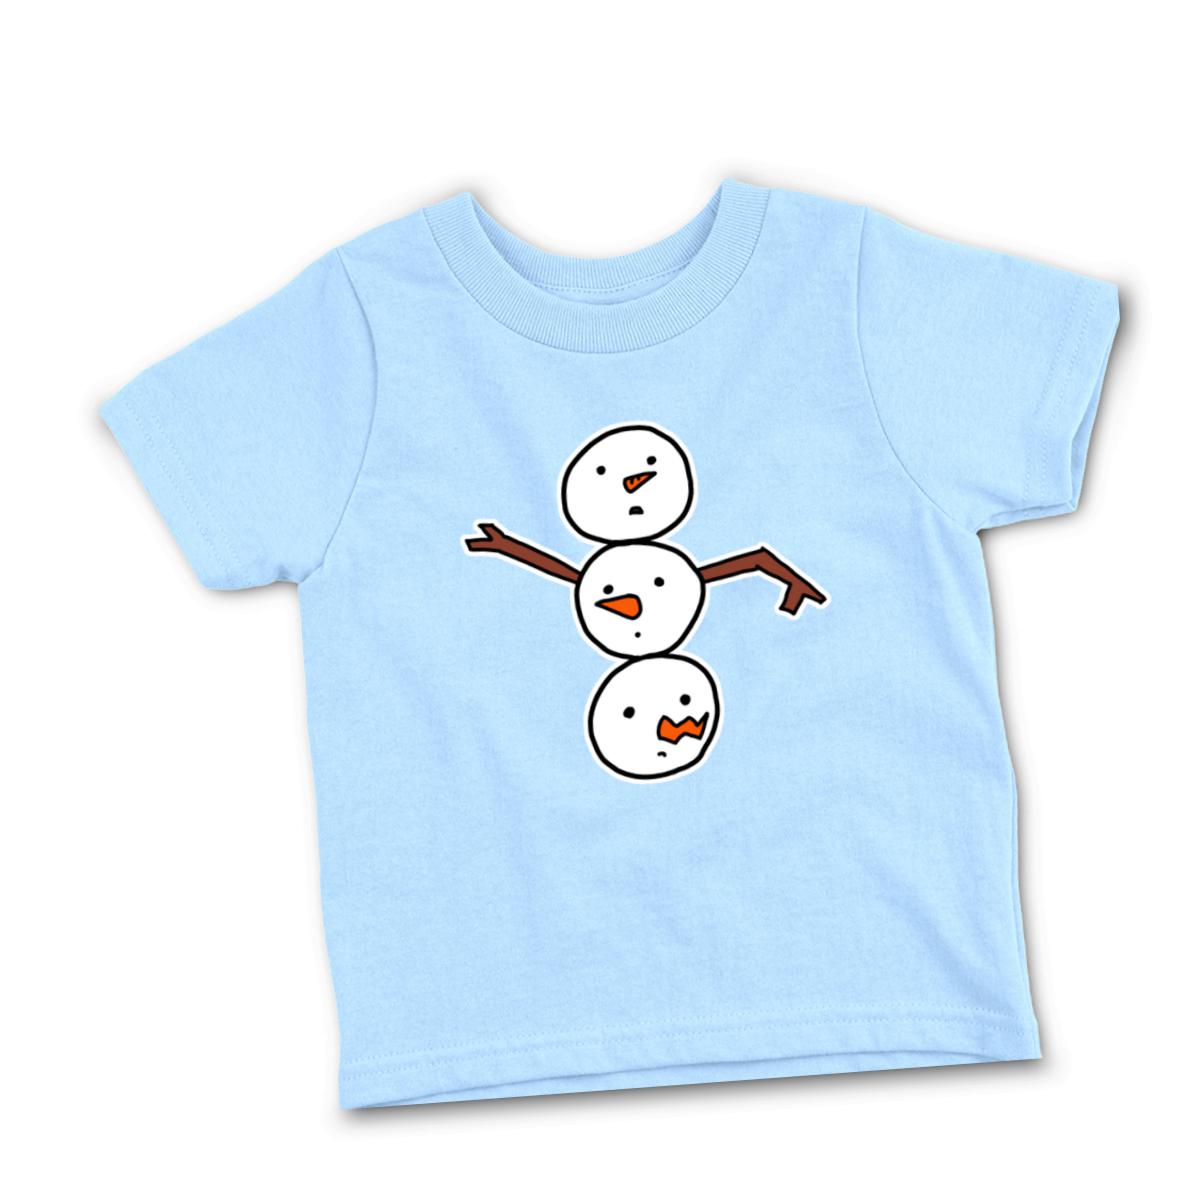 Snowman All Heads Infant Tee 18M light-blue